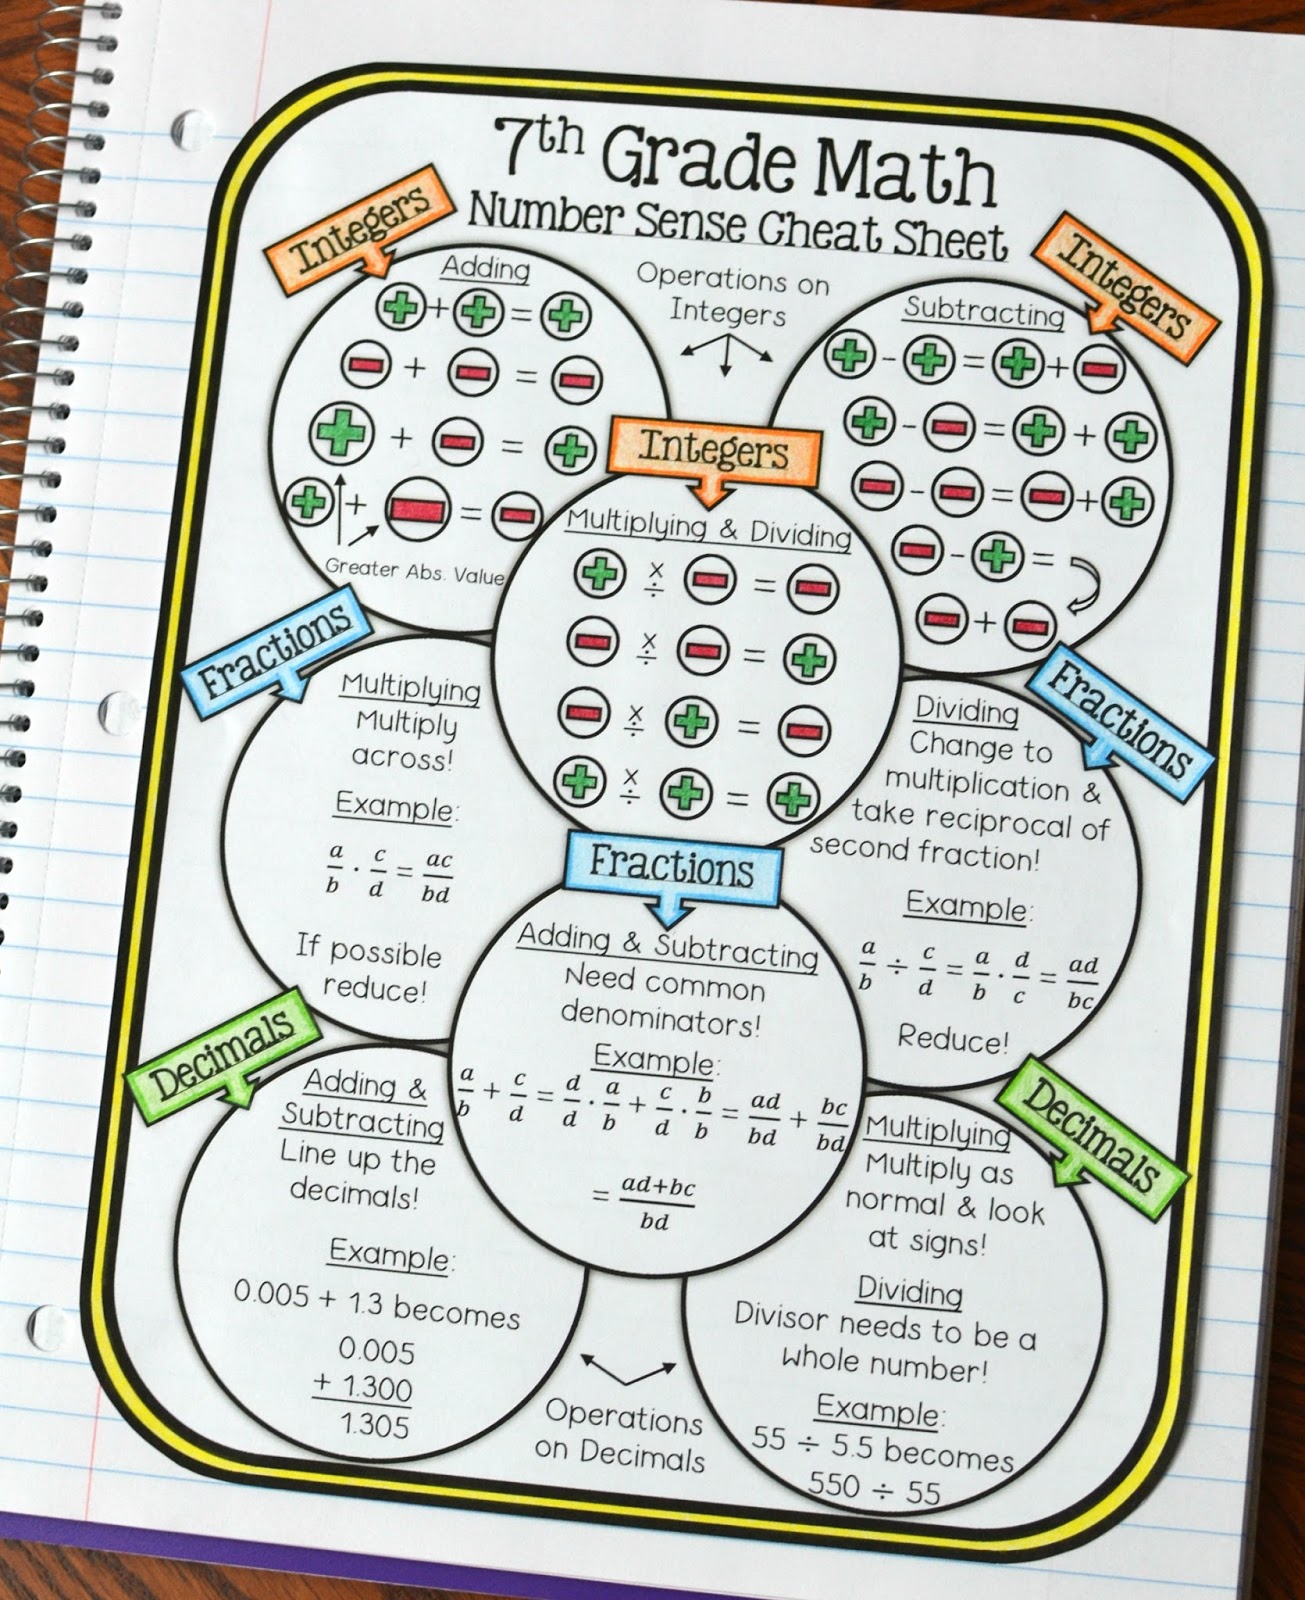 Math in Demand: 7th Grade Math Number Sense Cheat Sheet